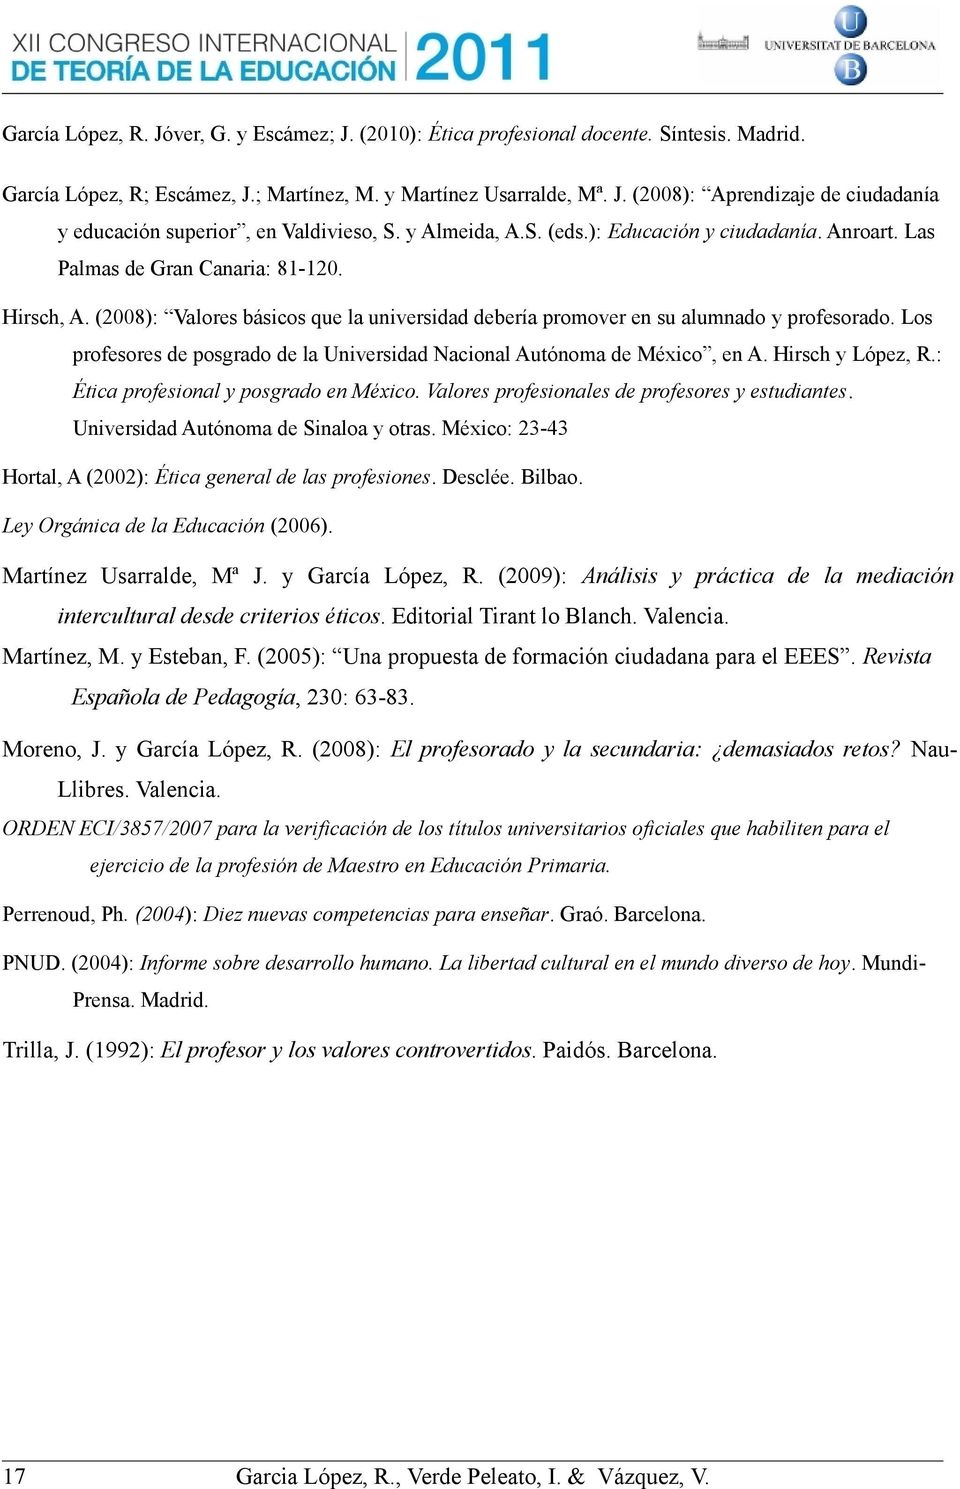 Los profesores de posgrado de la Universidad Nacional Autónoma de México, en A. Hirsch y López, R.: Ética profesional y posgrado en México. Valores profesionales de profesores y estudiantes.